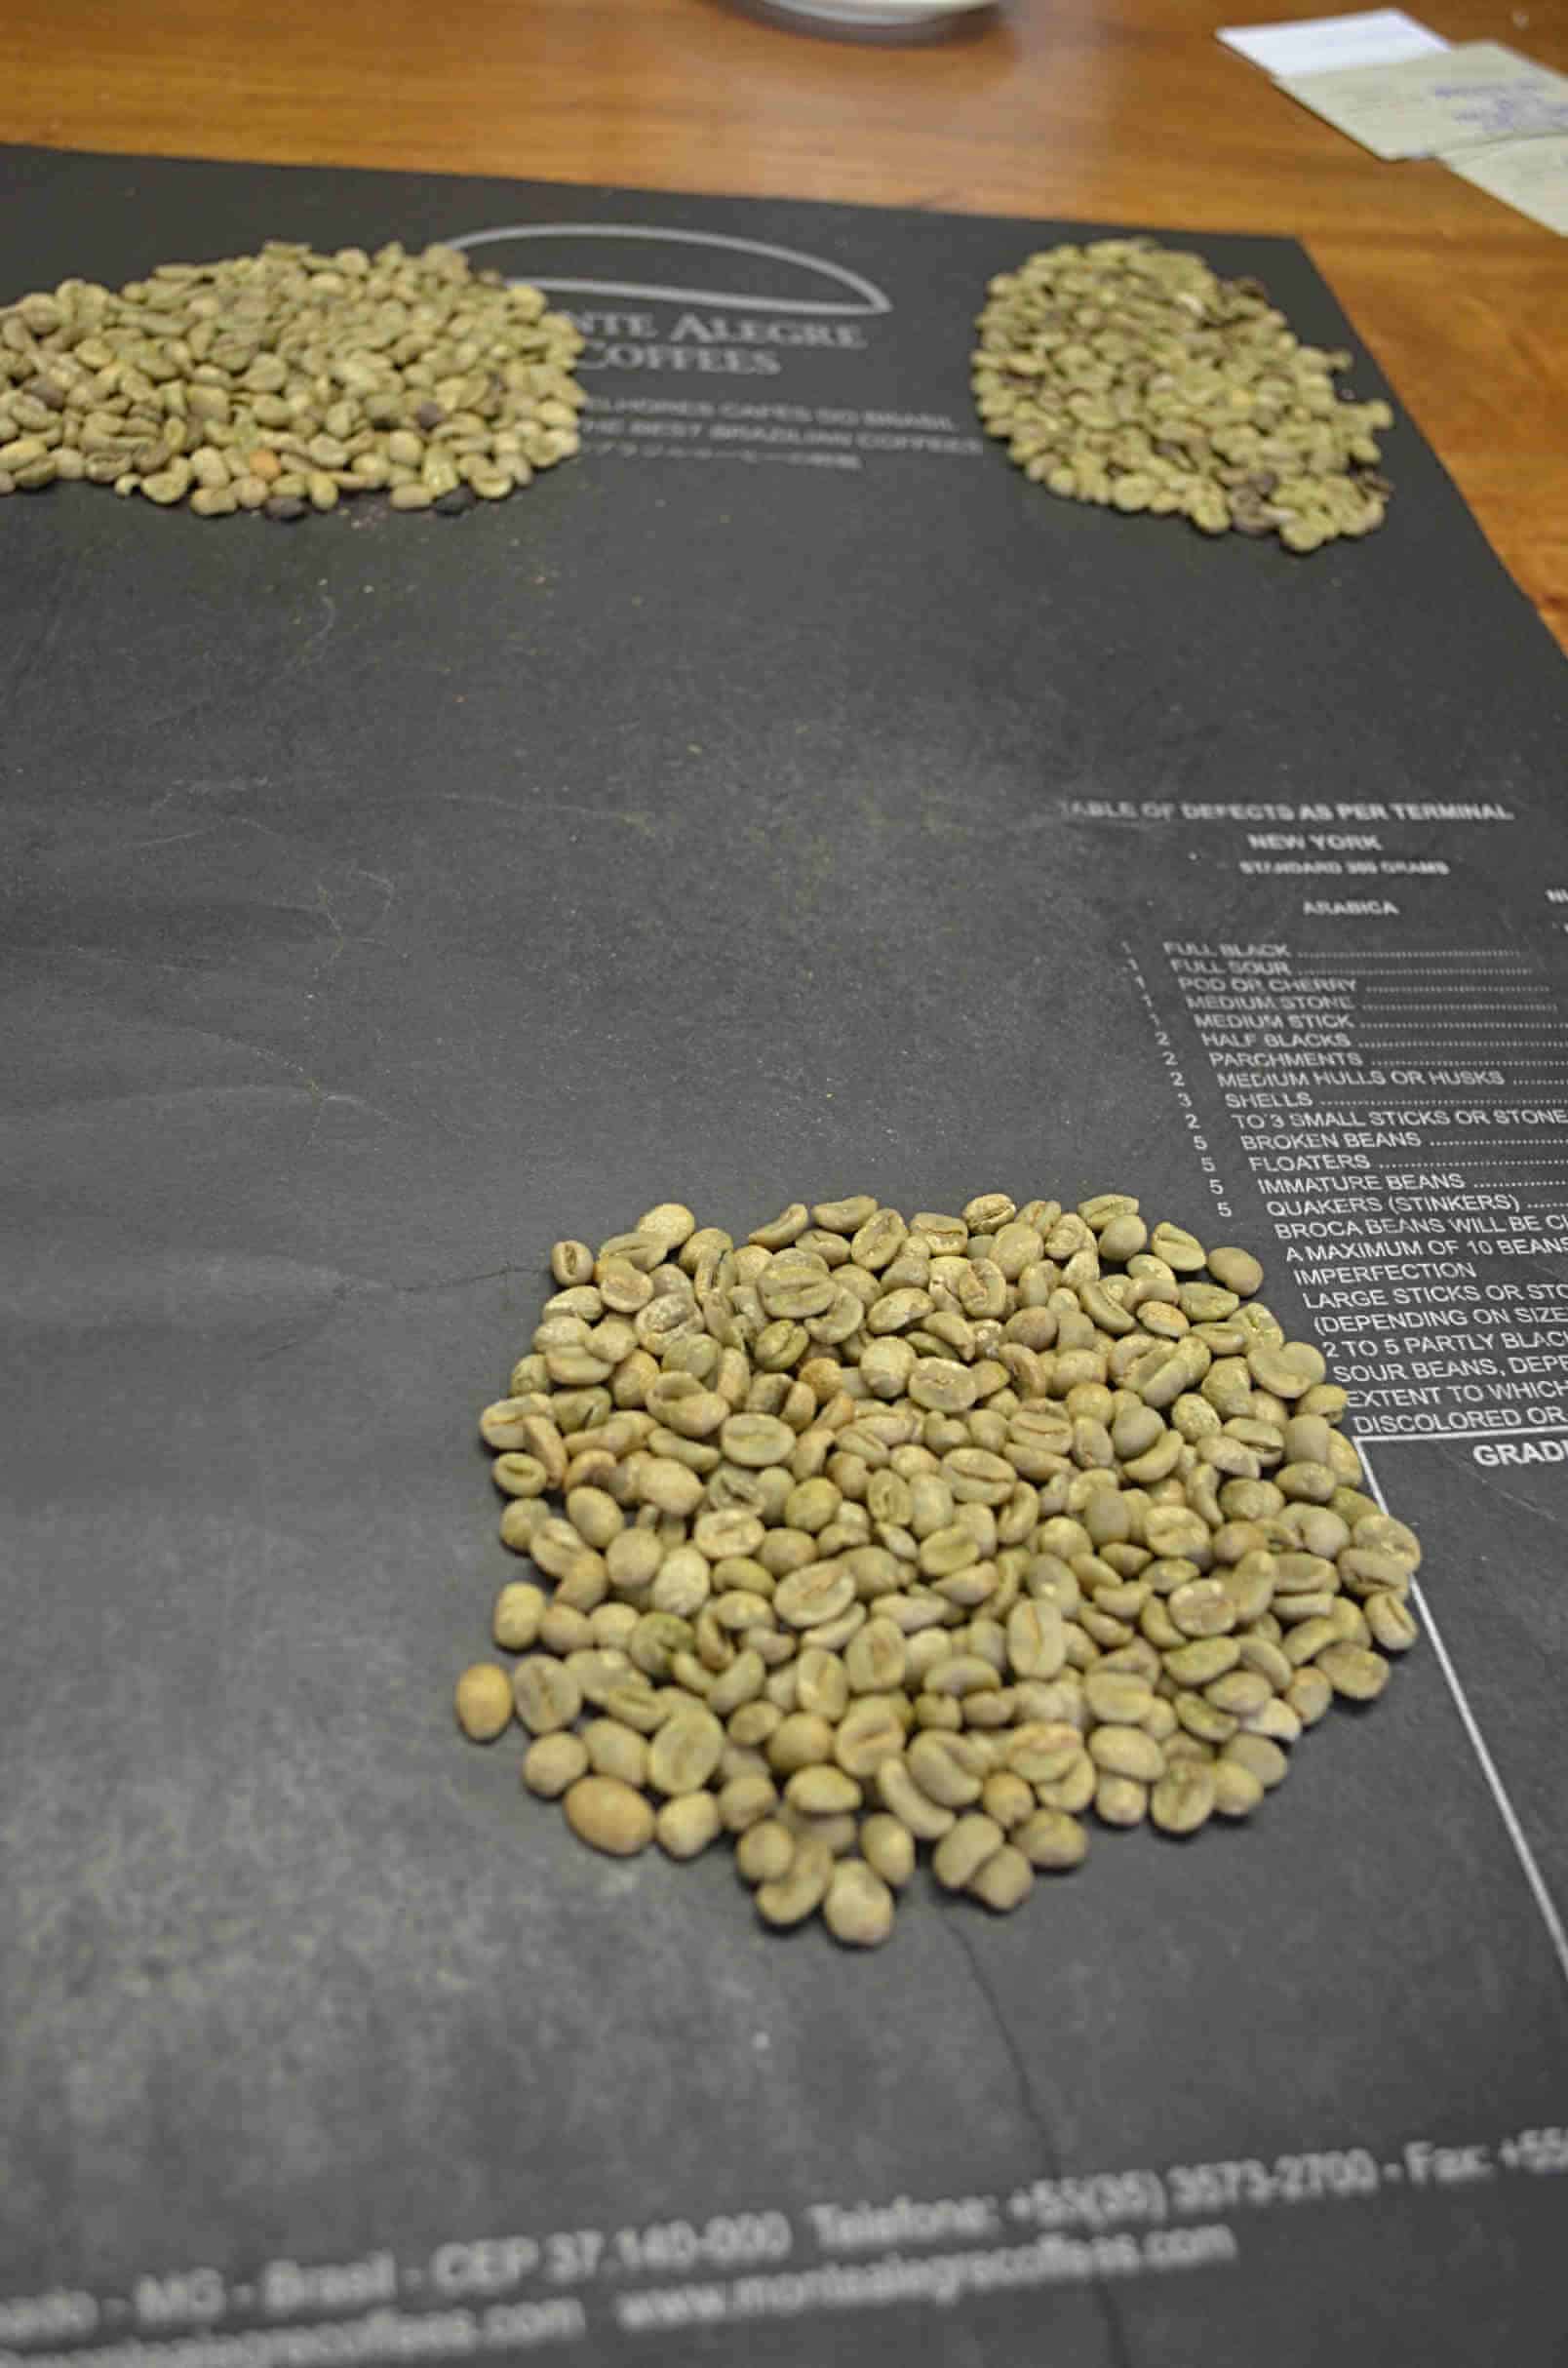 Grading w Brazylii -W siedzibie brazylijskiej firmy Monte Alegre kawa poddawana jest gradingowi. Grading jest procedurą klasyfikowania kawy w celu ustalenia jej typu, a co za tym idzie ceny, oraz stwierdzenia, czy nadaje się na eksport, czy tez należy sprzedać ją na rynku zenętrznym. Polega na oddzieleniu i posortowaniu ziaren z defektami od tych pozbawionych wad. W Brazylii powszechnie stosownae są specjalne czarne maty do gradingu, które ułatwiają rozpoznawanie defektów.